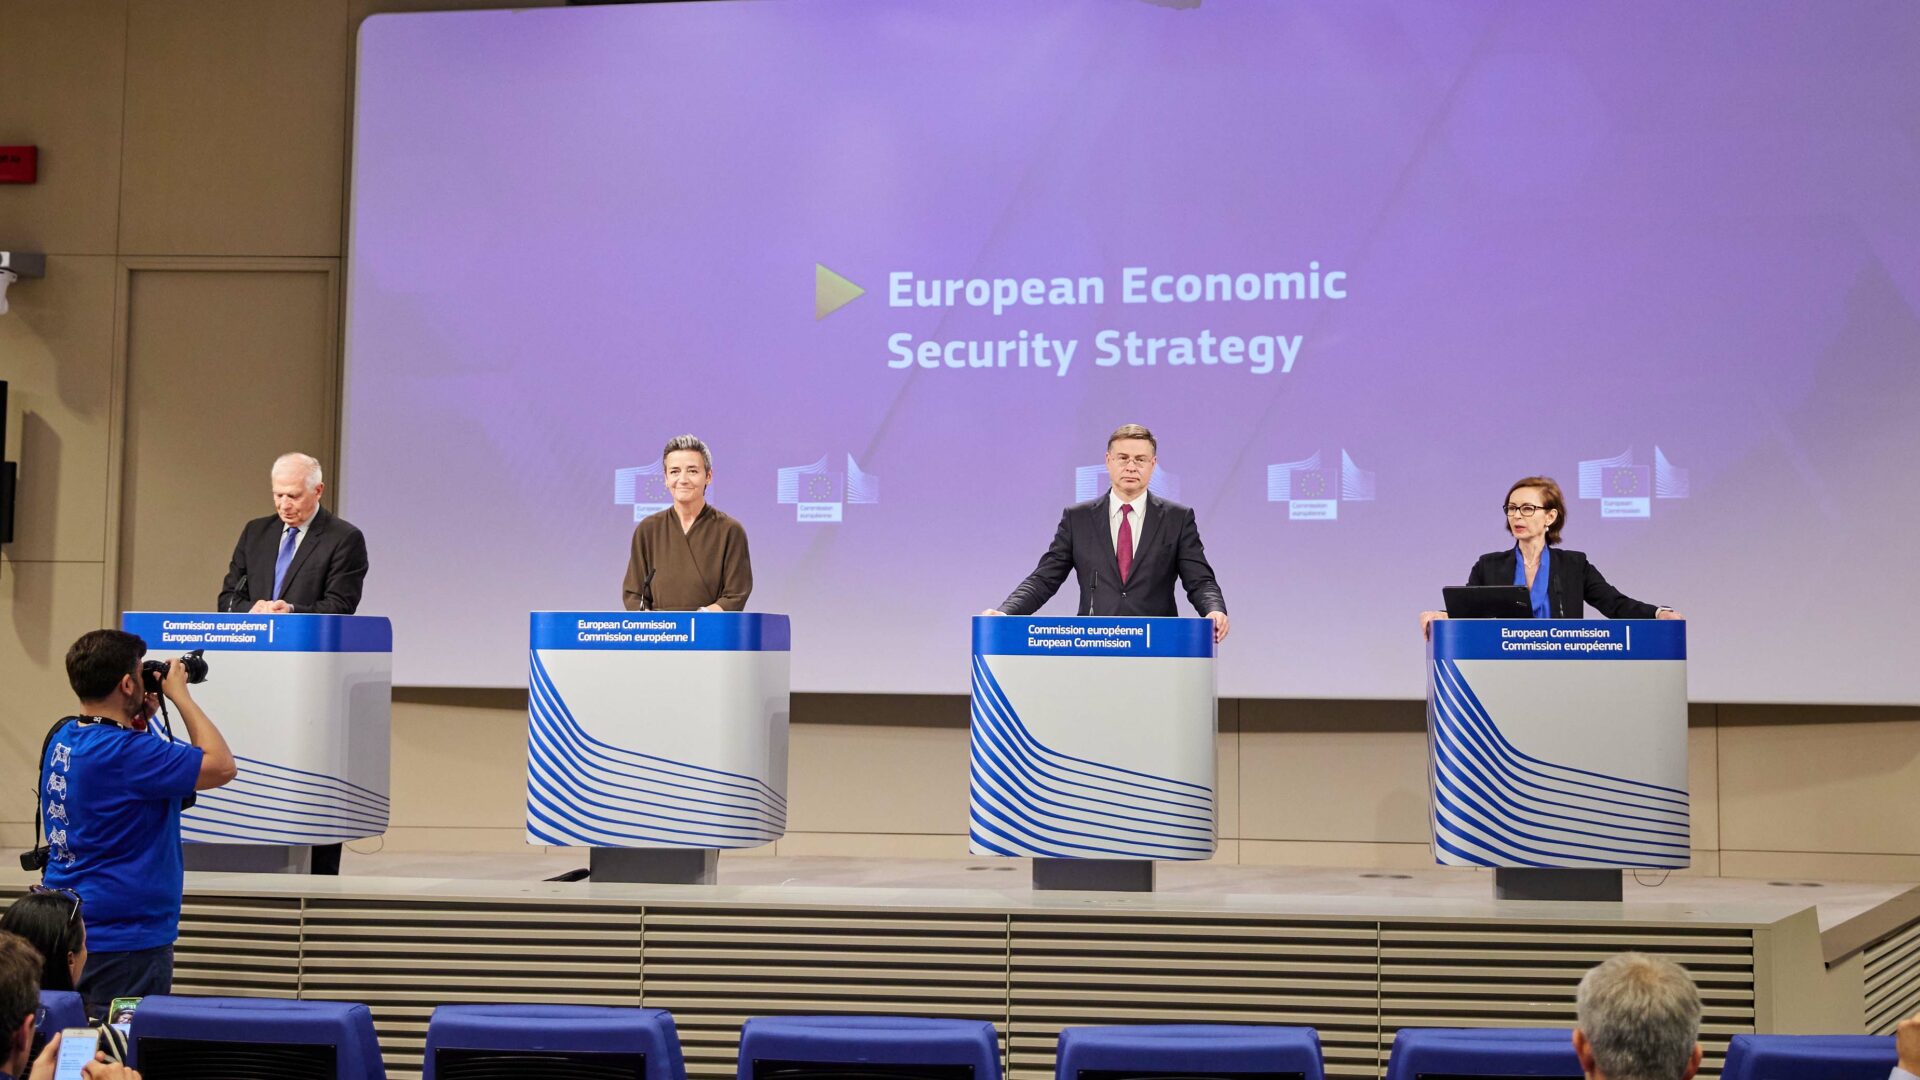 Komisja Europejska przedstawiła europejską strategię bezpieczeństwa gospodarczego